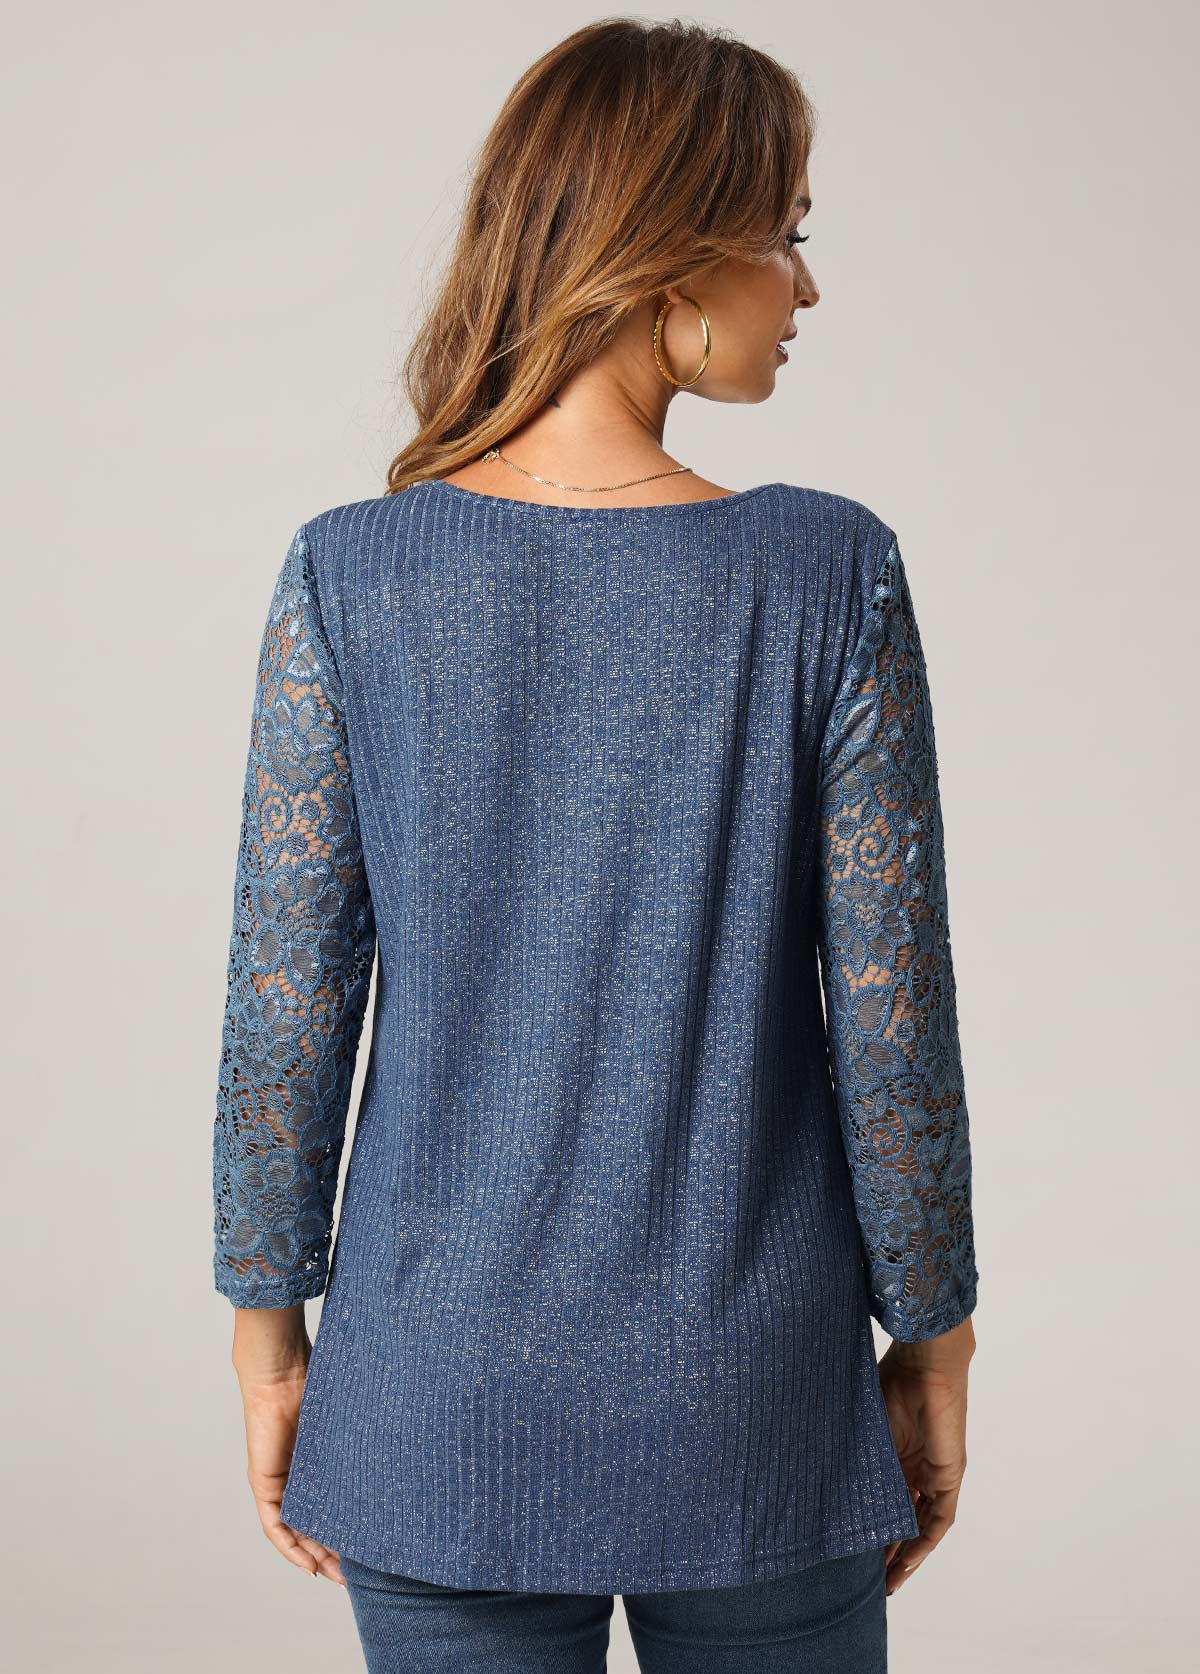 Cross Strap Lace Stitching Blue T Shirt